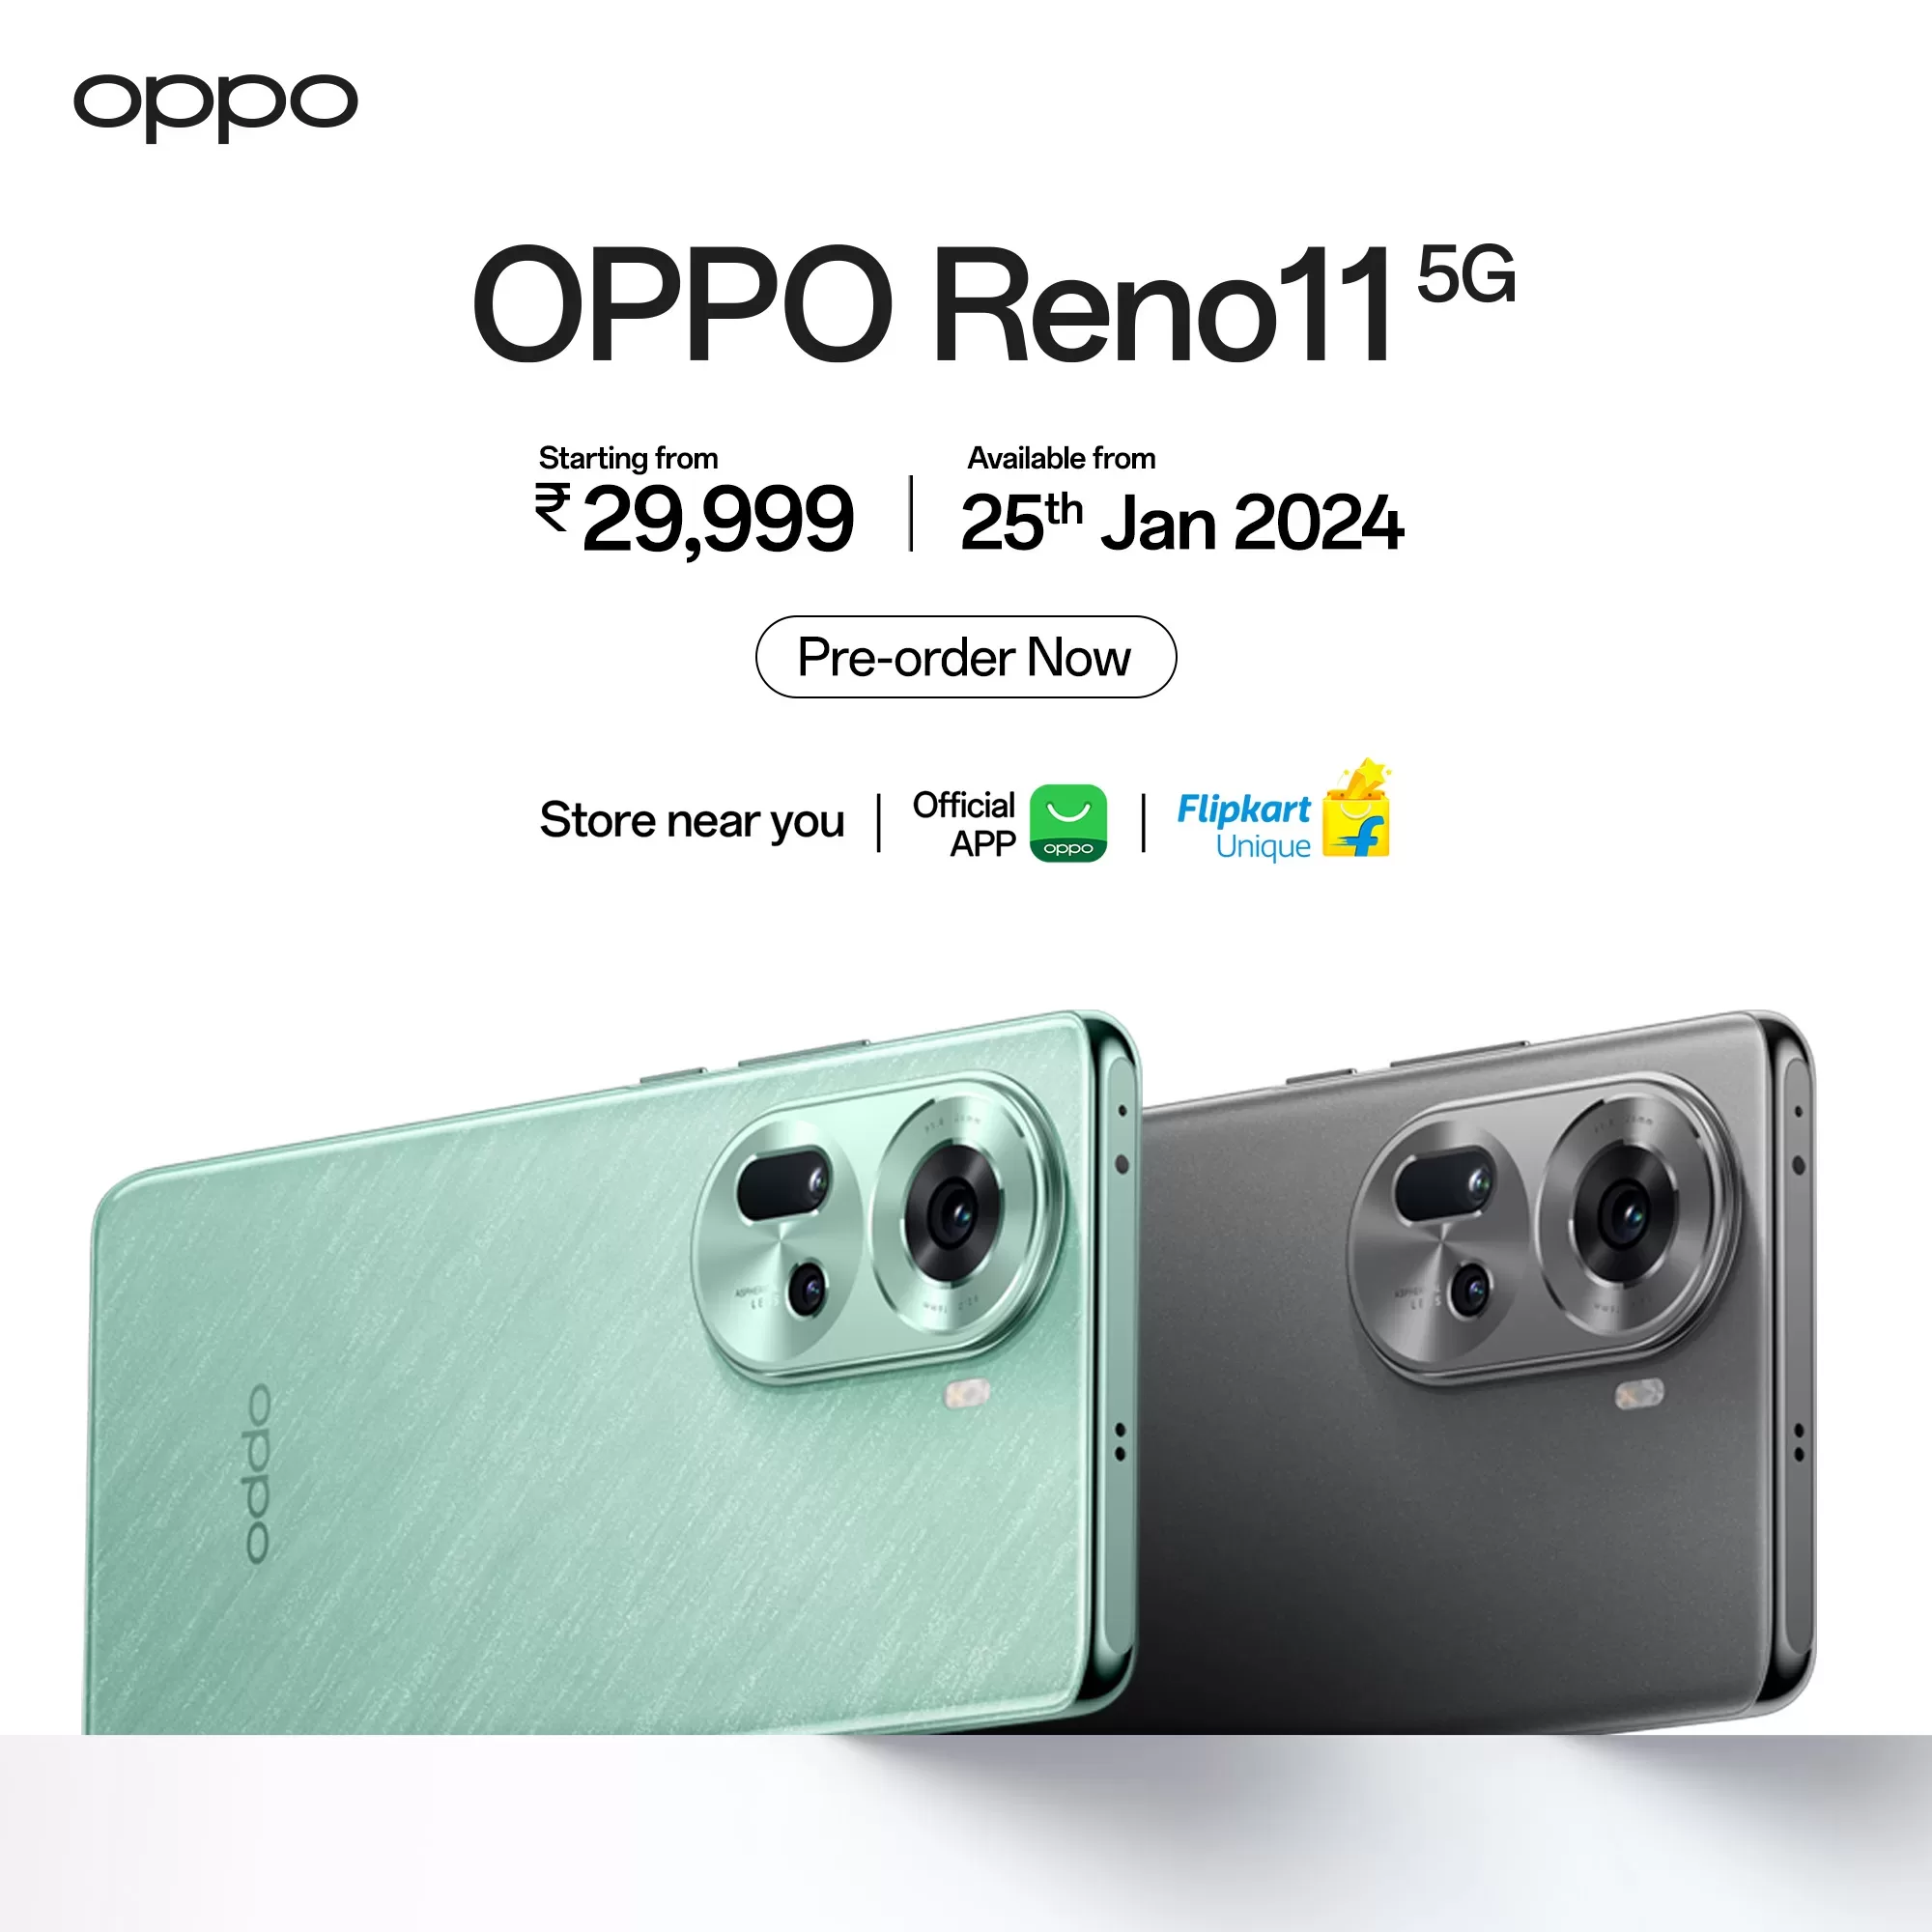 OPPO Reno11 5g Price